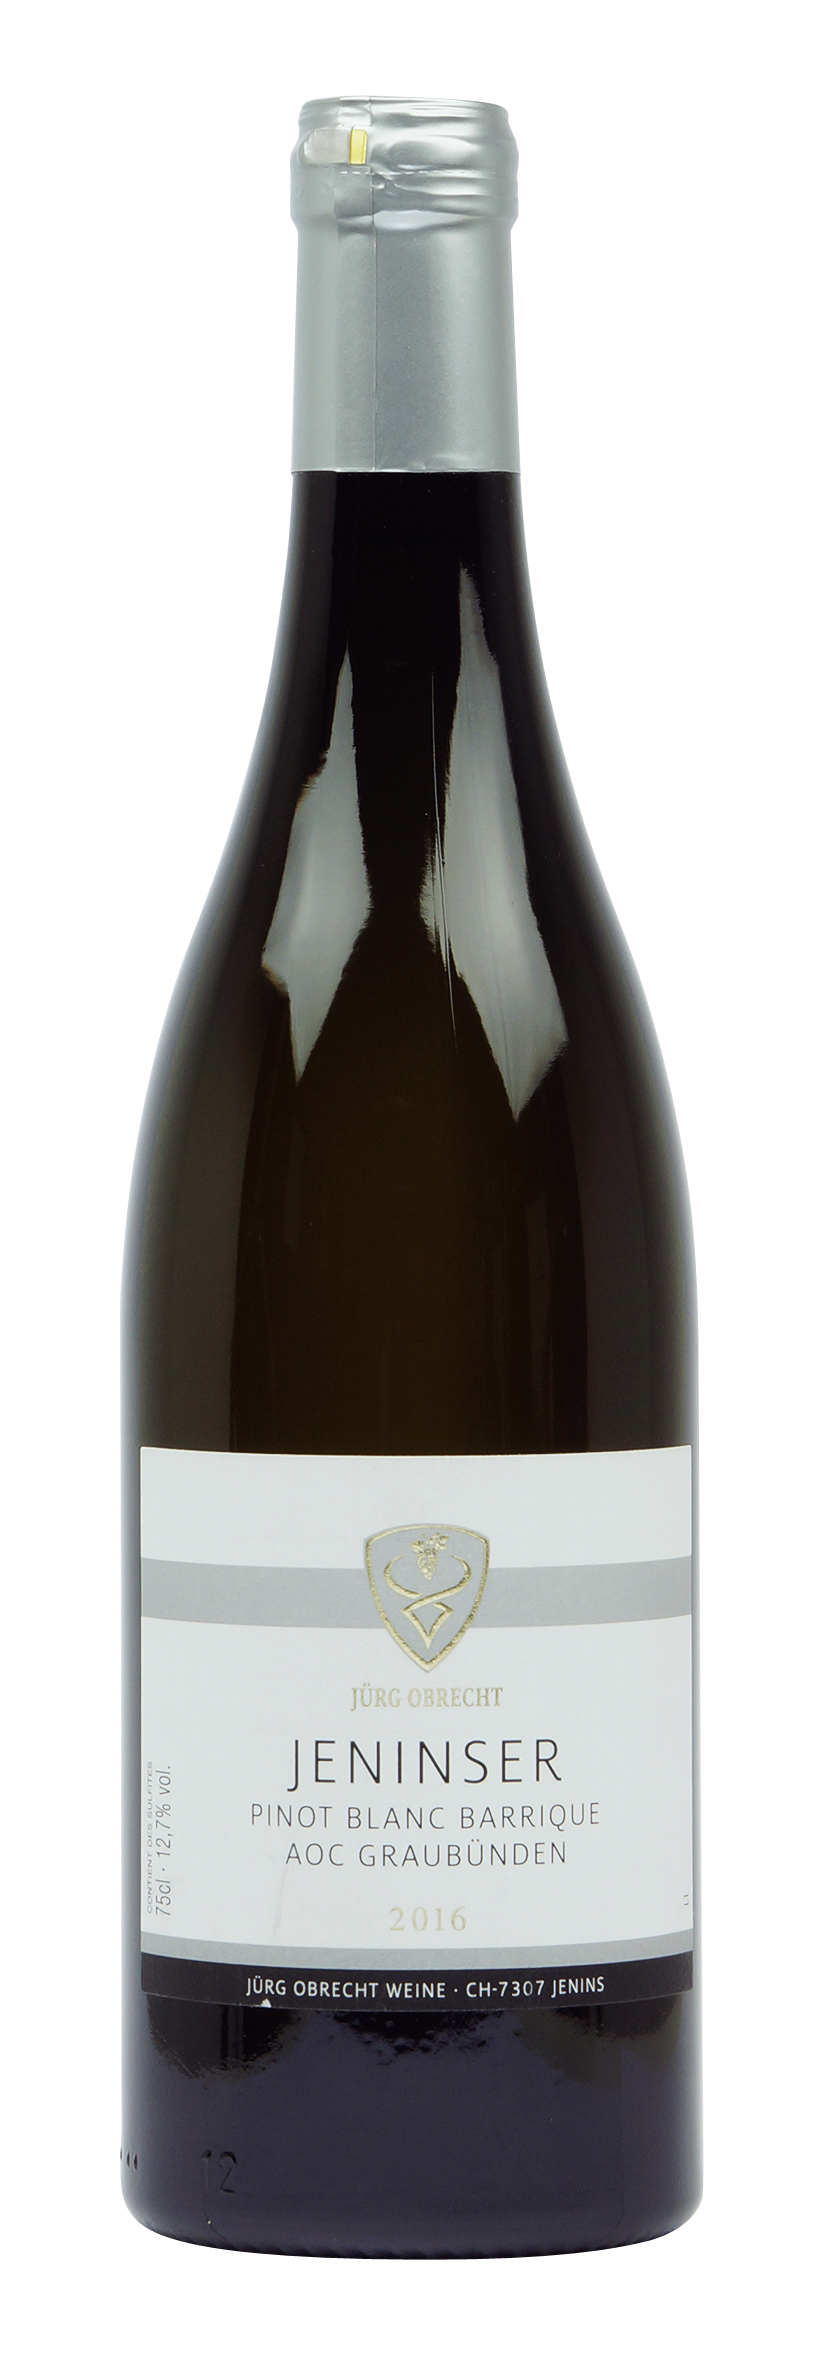 Graubünden AOC Jeninser Pinot Blanc Barrique 2016